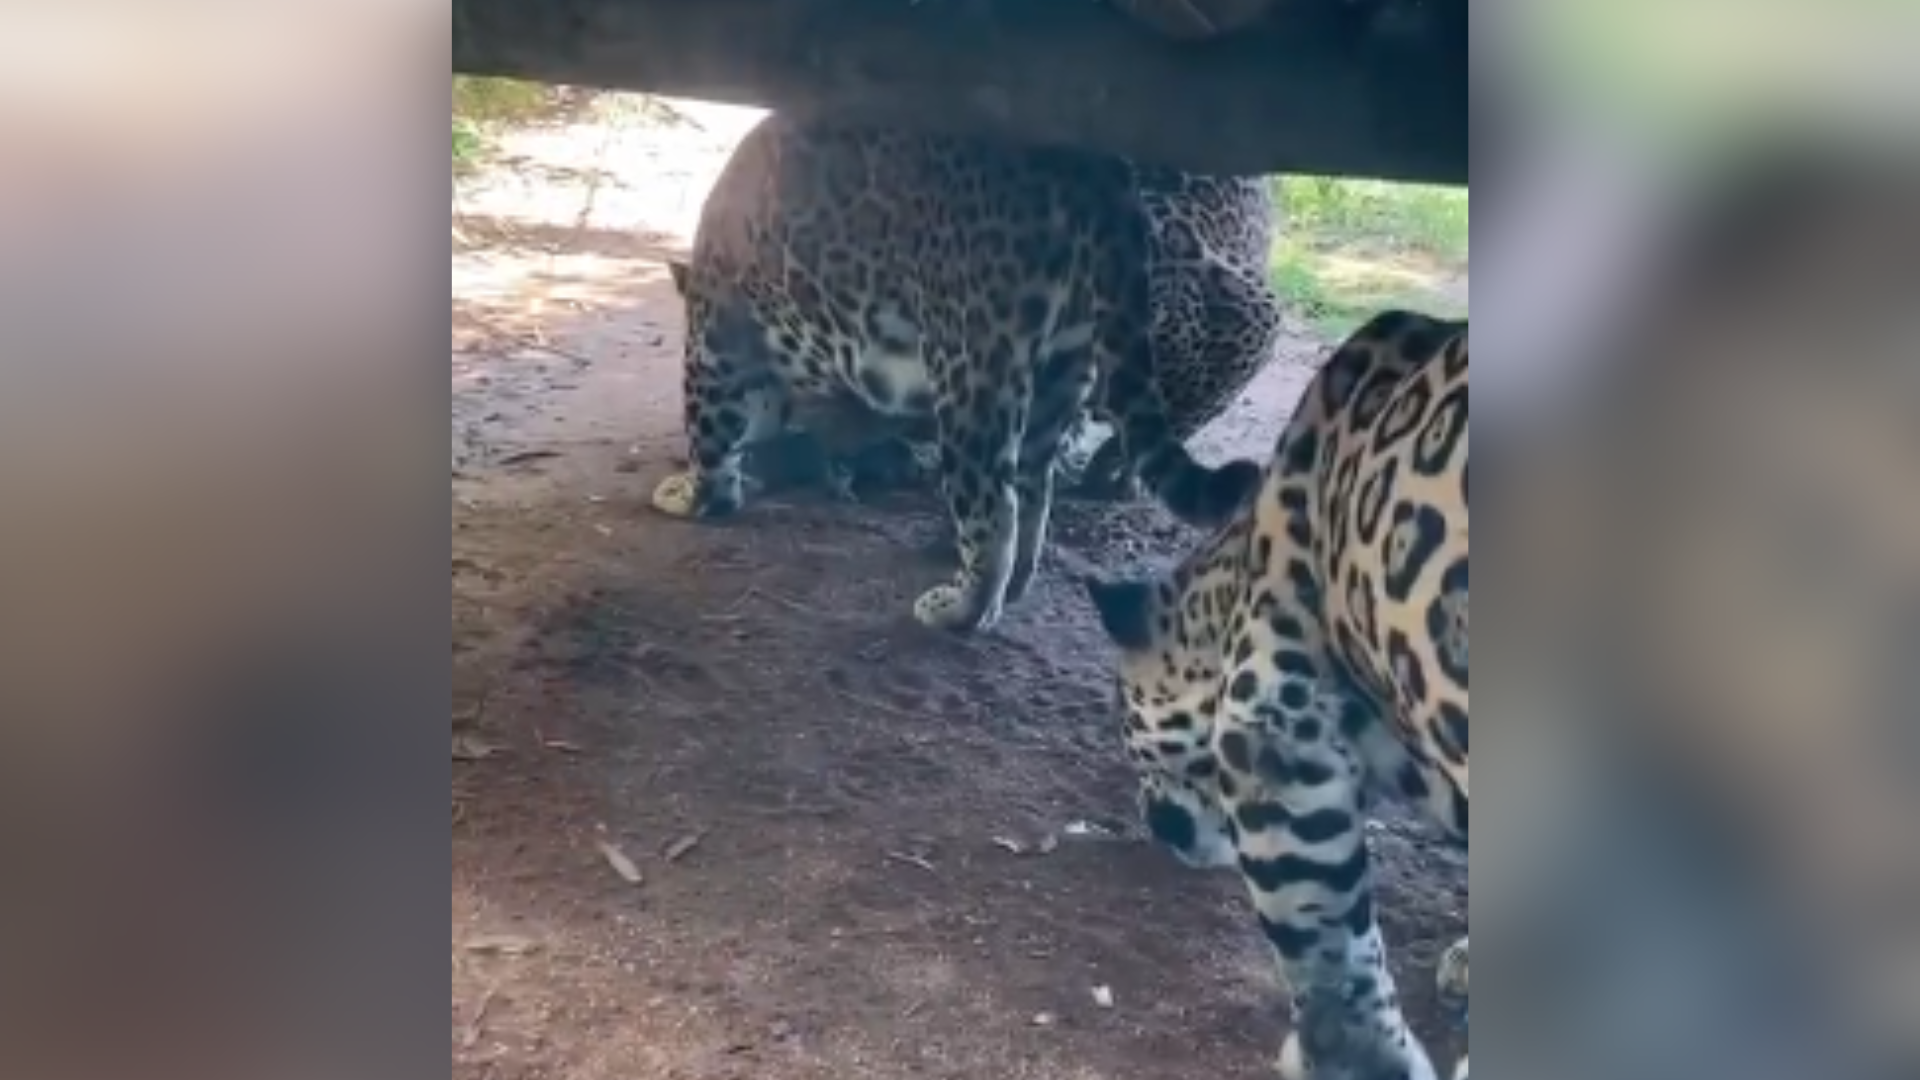 Alunos que visitavam o zoológico estavam filmando e flagraram a cena, na terça-feira (22); Iema enviou equipe ao local nesta quarta-feira (23) para apurar o ocorrido